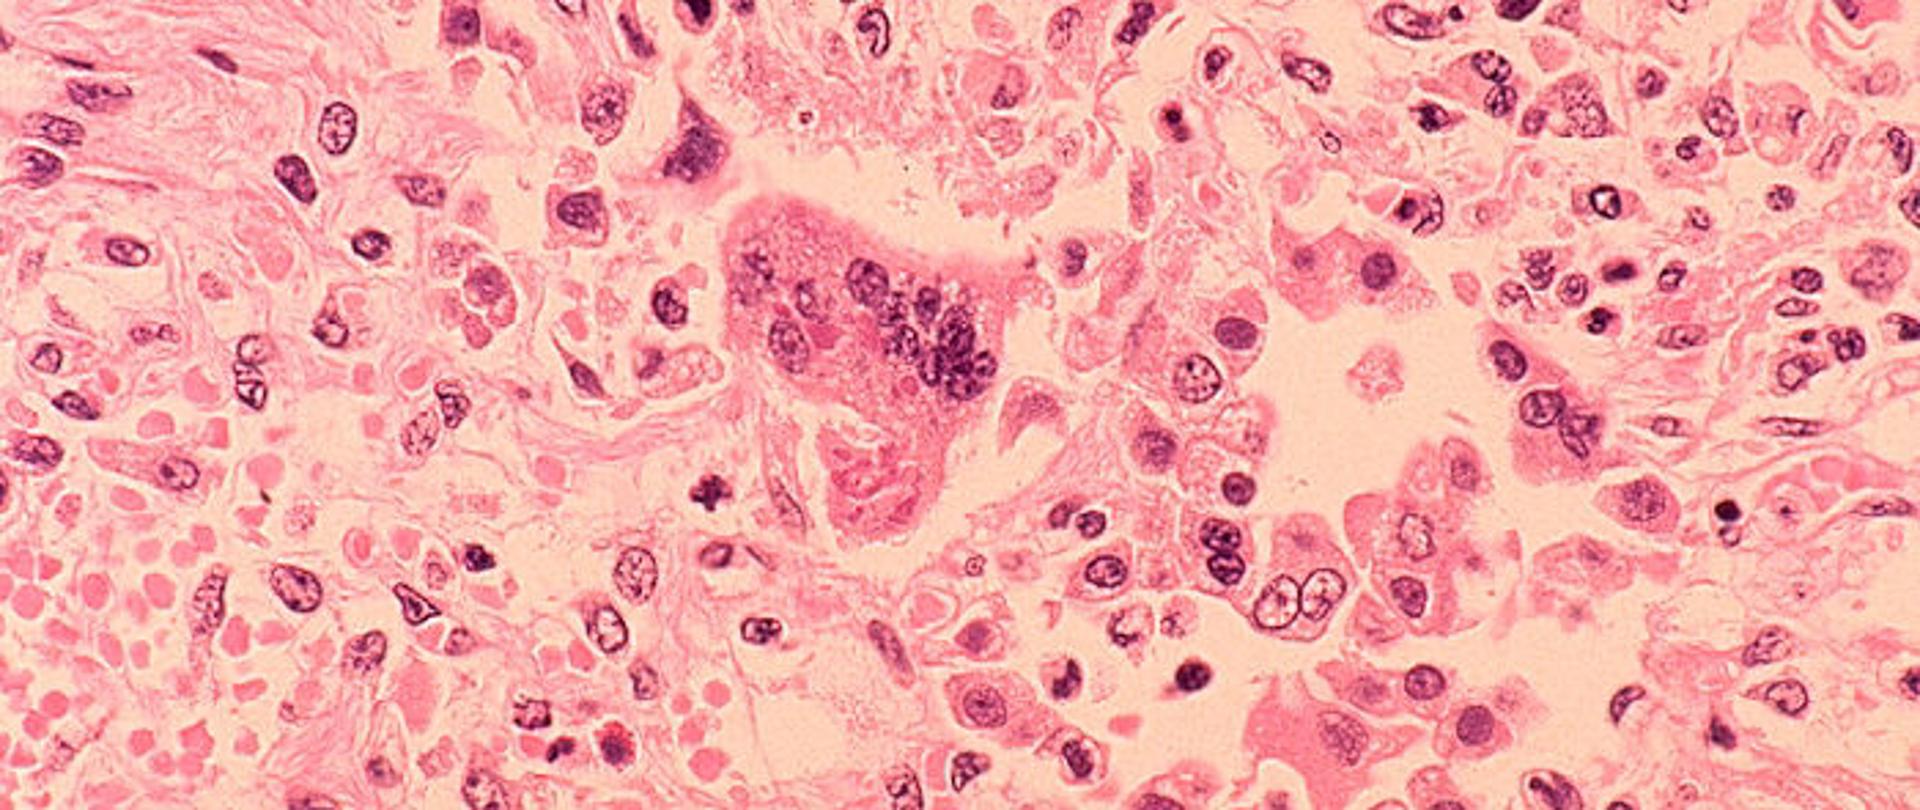 mikroskopowe zdjęcie drobnoustrojów wywołujących odrę